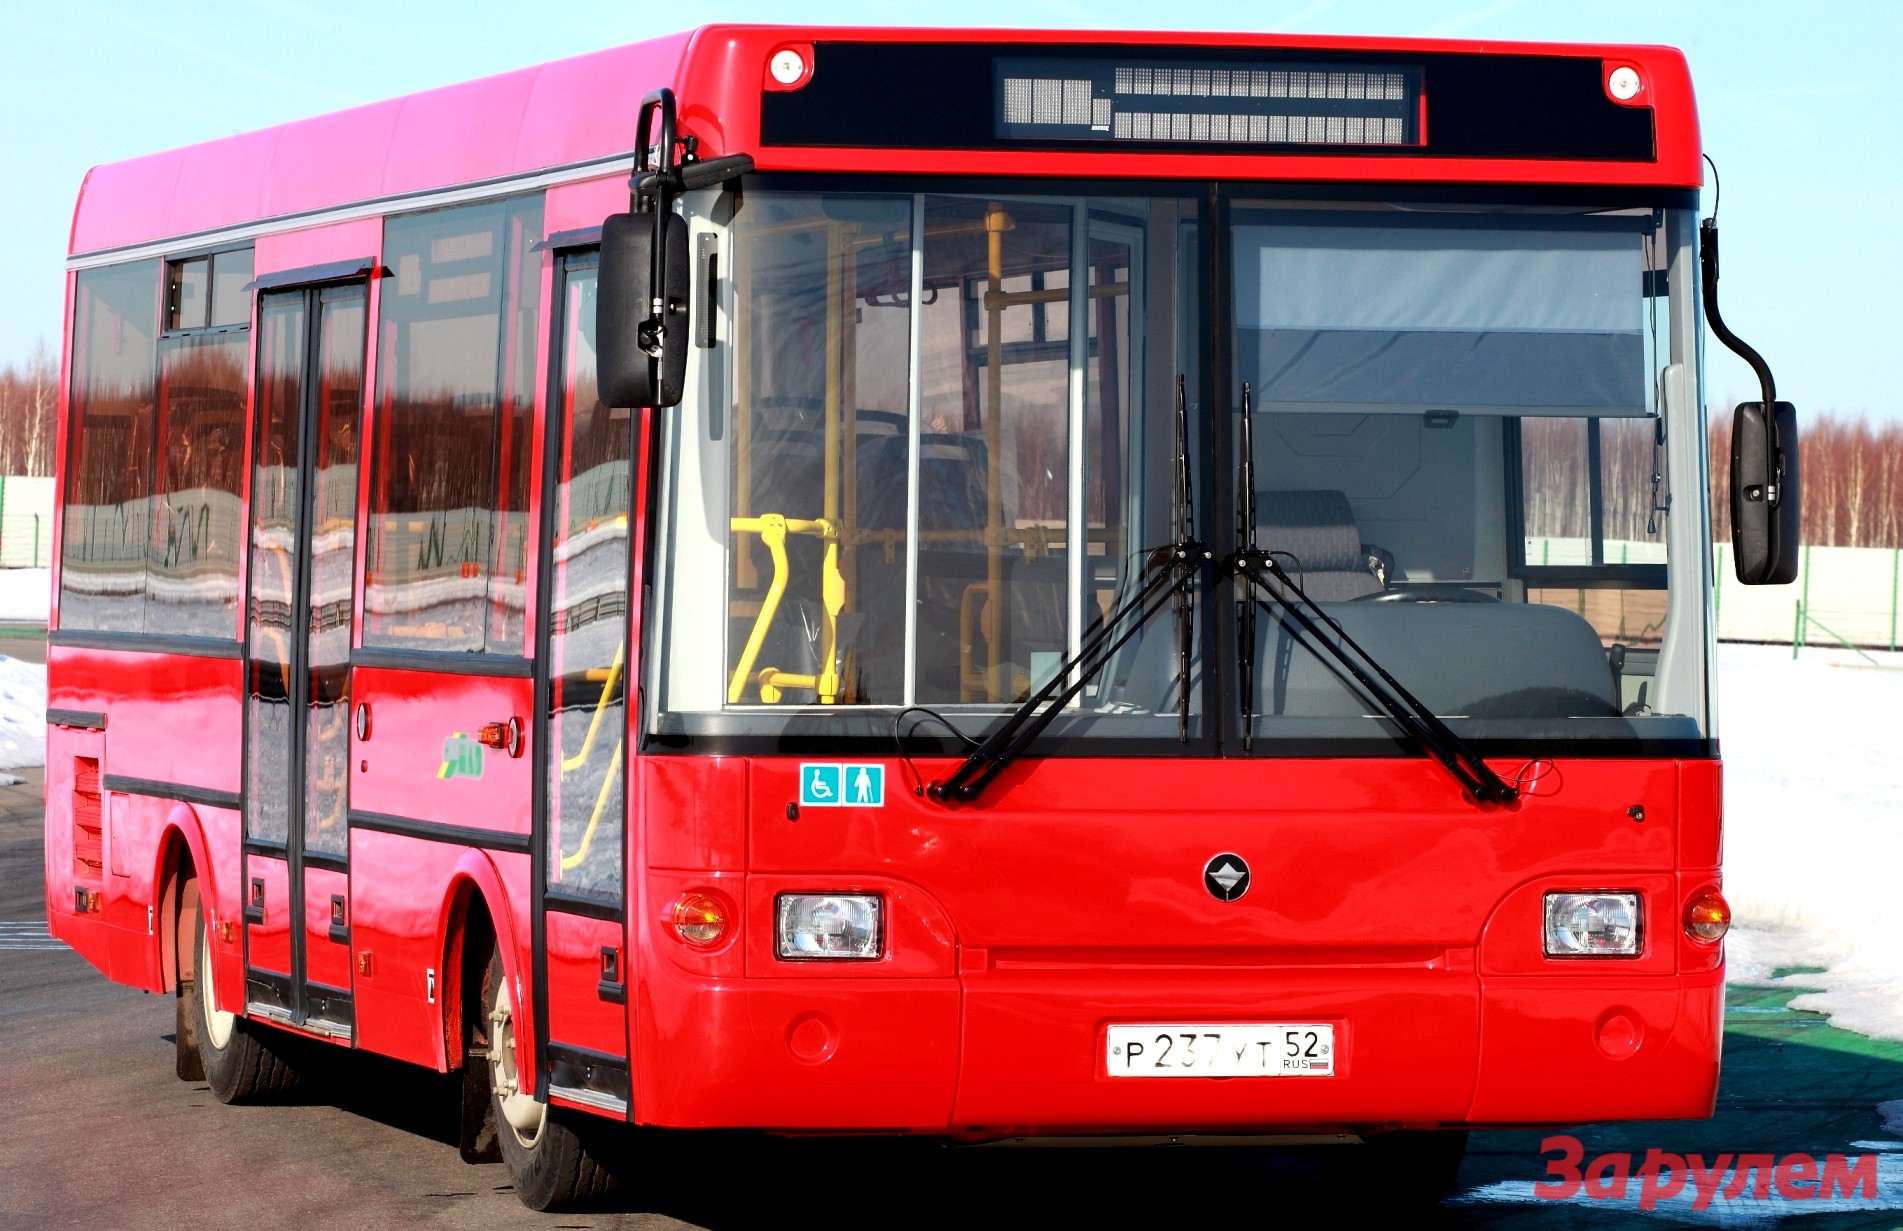 Красный автобус маршрутка. ПАЗ-3237 автобус. ПАЗ низкопольный 3237. ПАЗ 3237 новый. ПАЗ 3237 газовый.